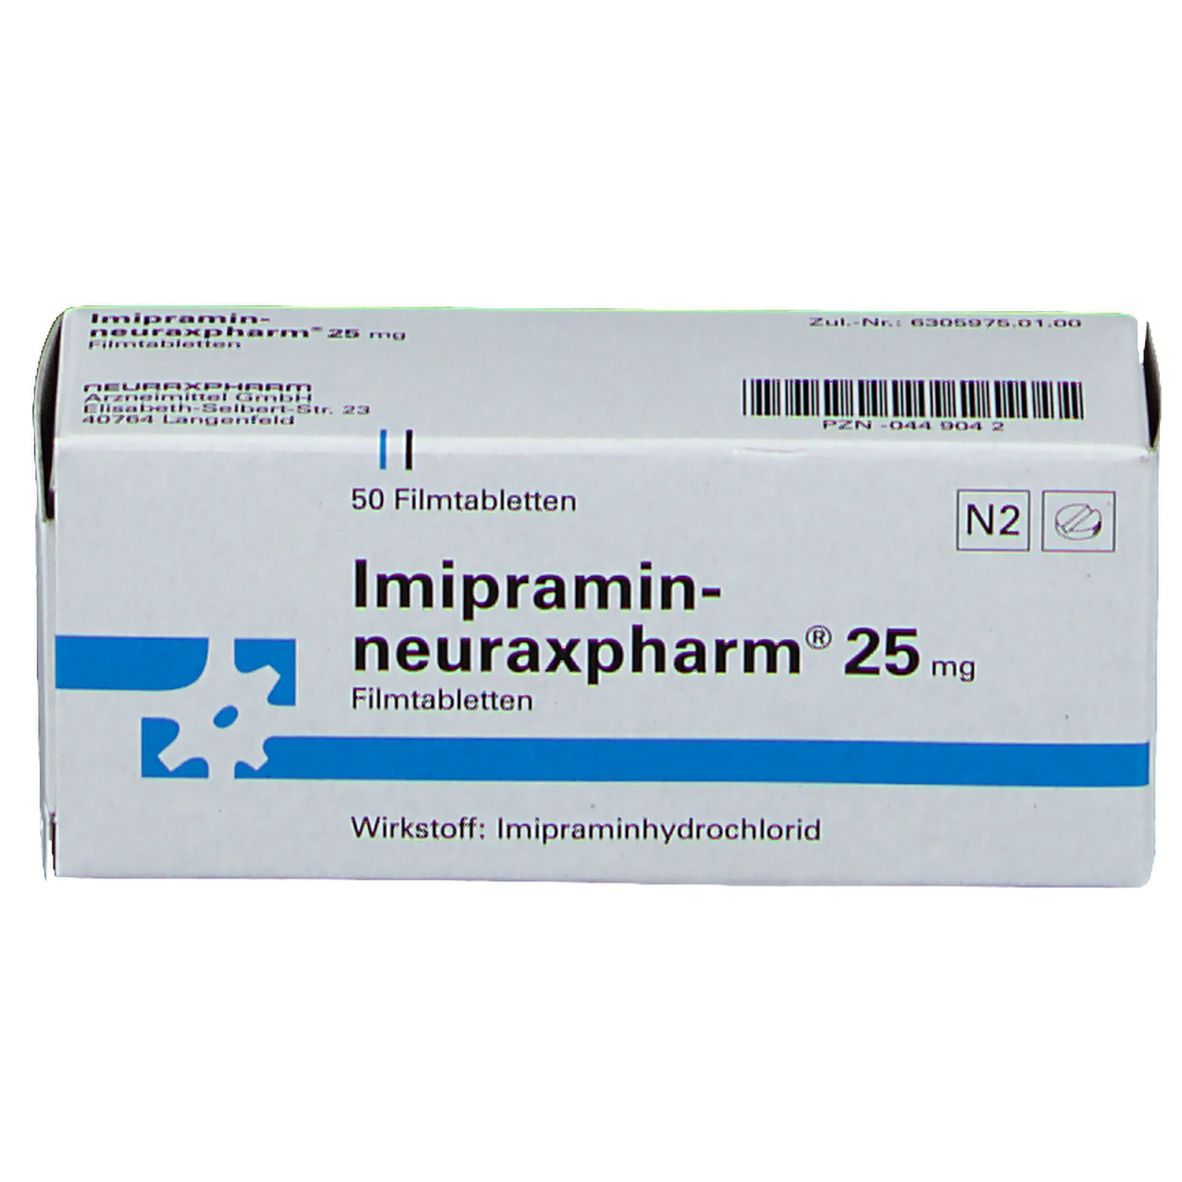 Imipramin-neuraxpharm® 25 mg